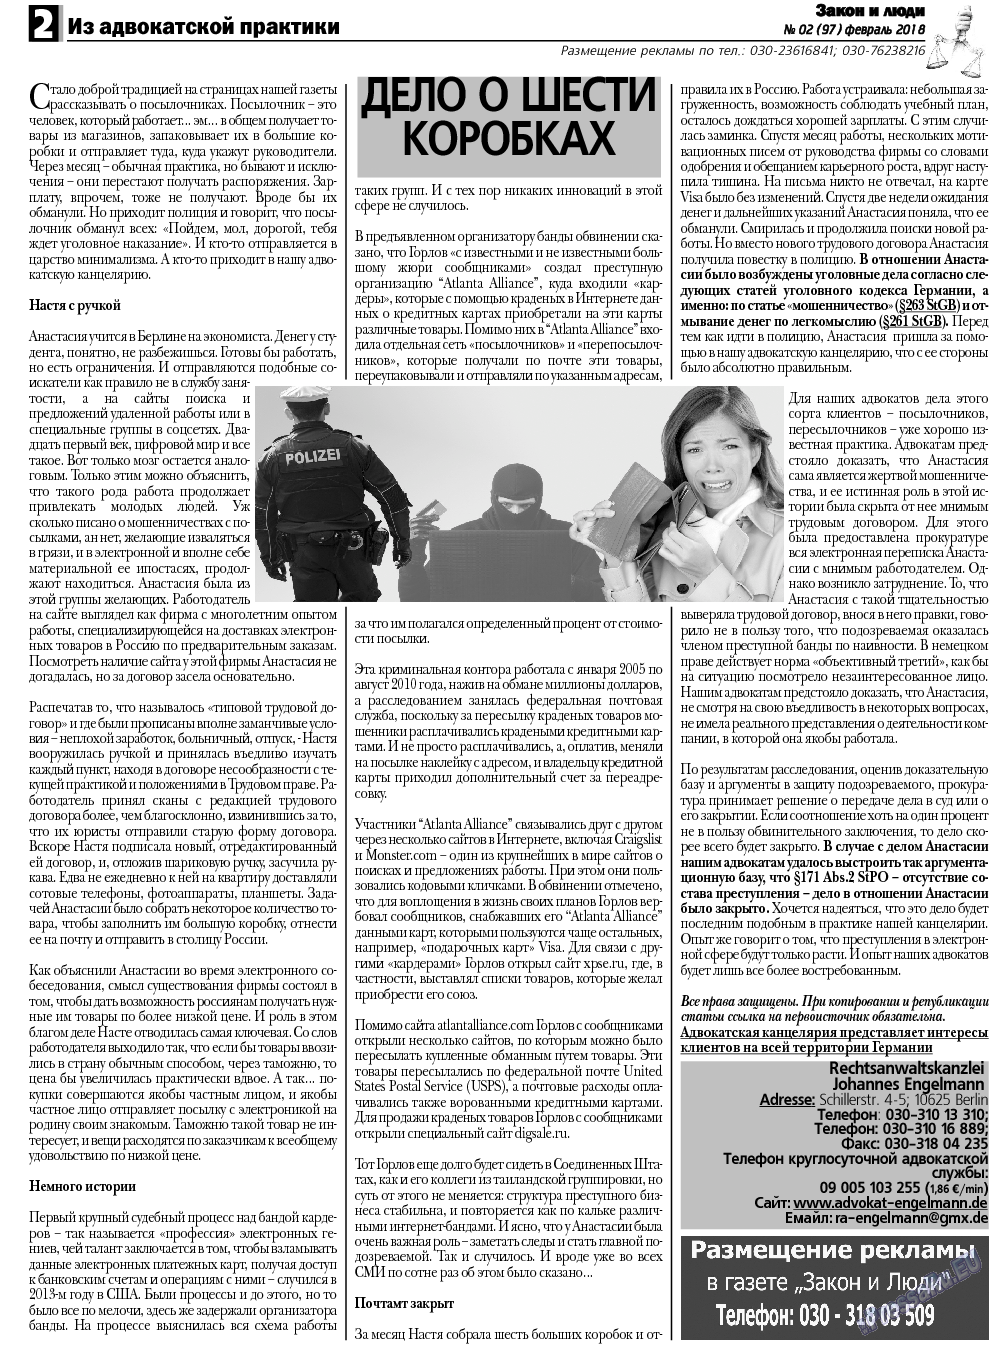 Закон и люди, газета. 2018 №2 стр.2